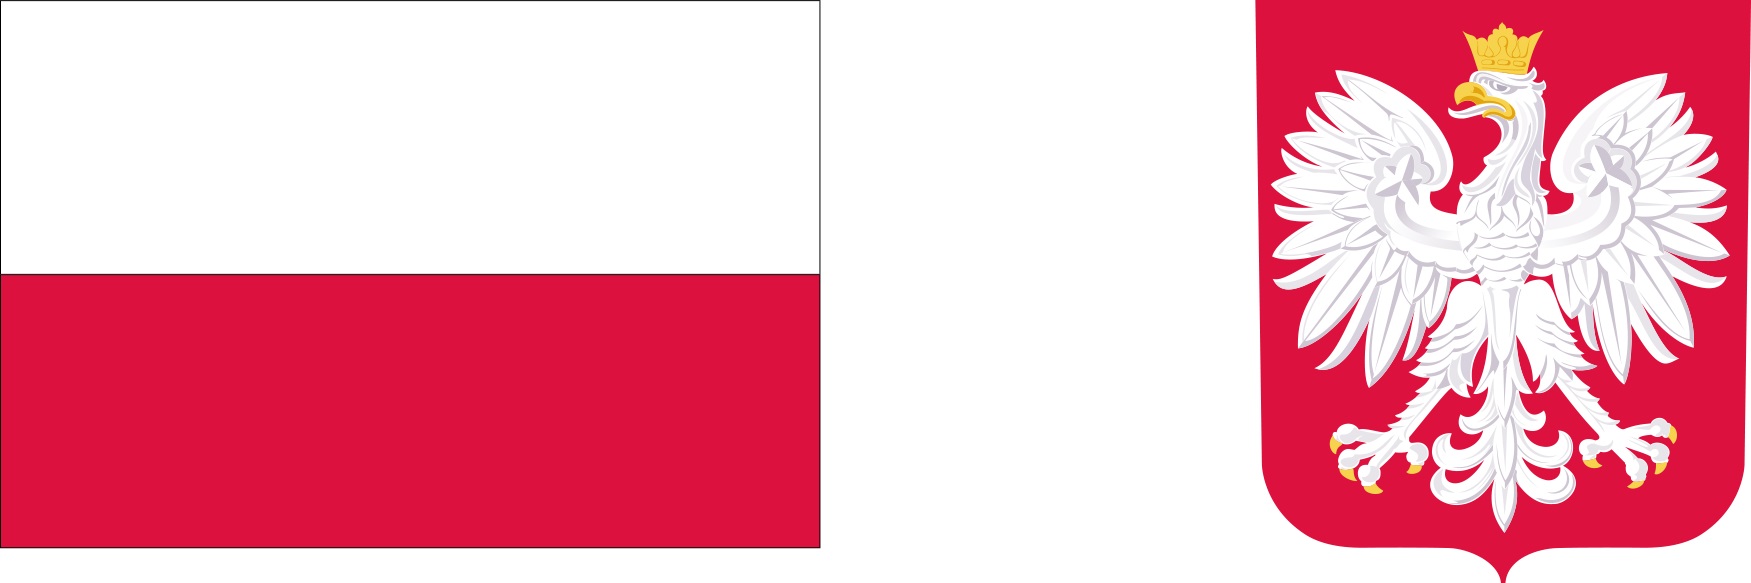 Flaga Polski – prostokąt o barwach białej i czerwonej, ułożonych w dwóch poziomych, równoległych pasach tej samej szerokości, z których górny jest koloru białego, a dolny koloru czerwonego. Godło Polski – biały orzeł w złotej koronie, ze złotymi szponami i dziobem, zwrócony w prawo, umieszone na czerwonym polu, lekko zwężającej się ku dołowi tarczy herbowej.